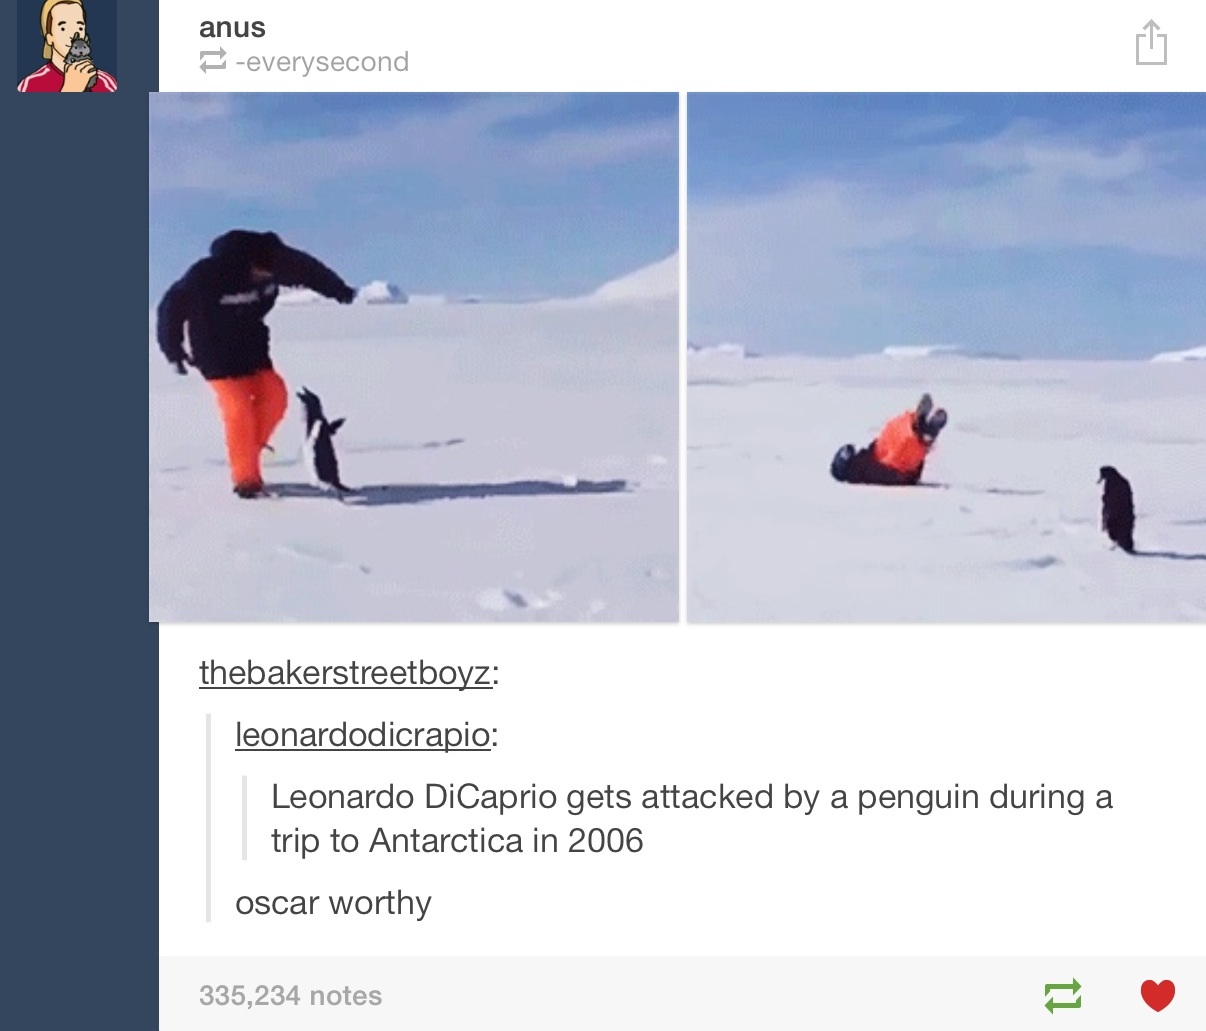 The penguin really deserves it